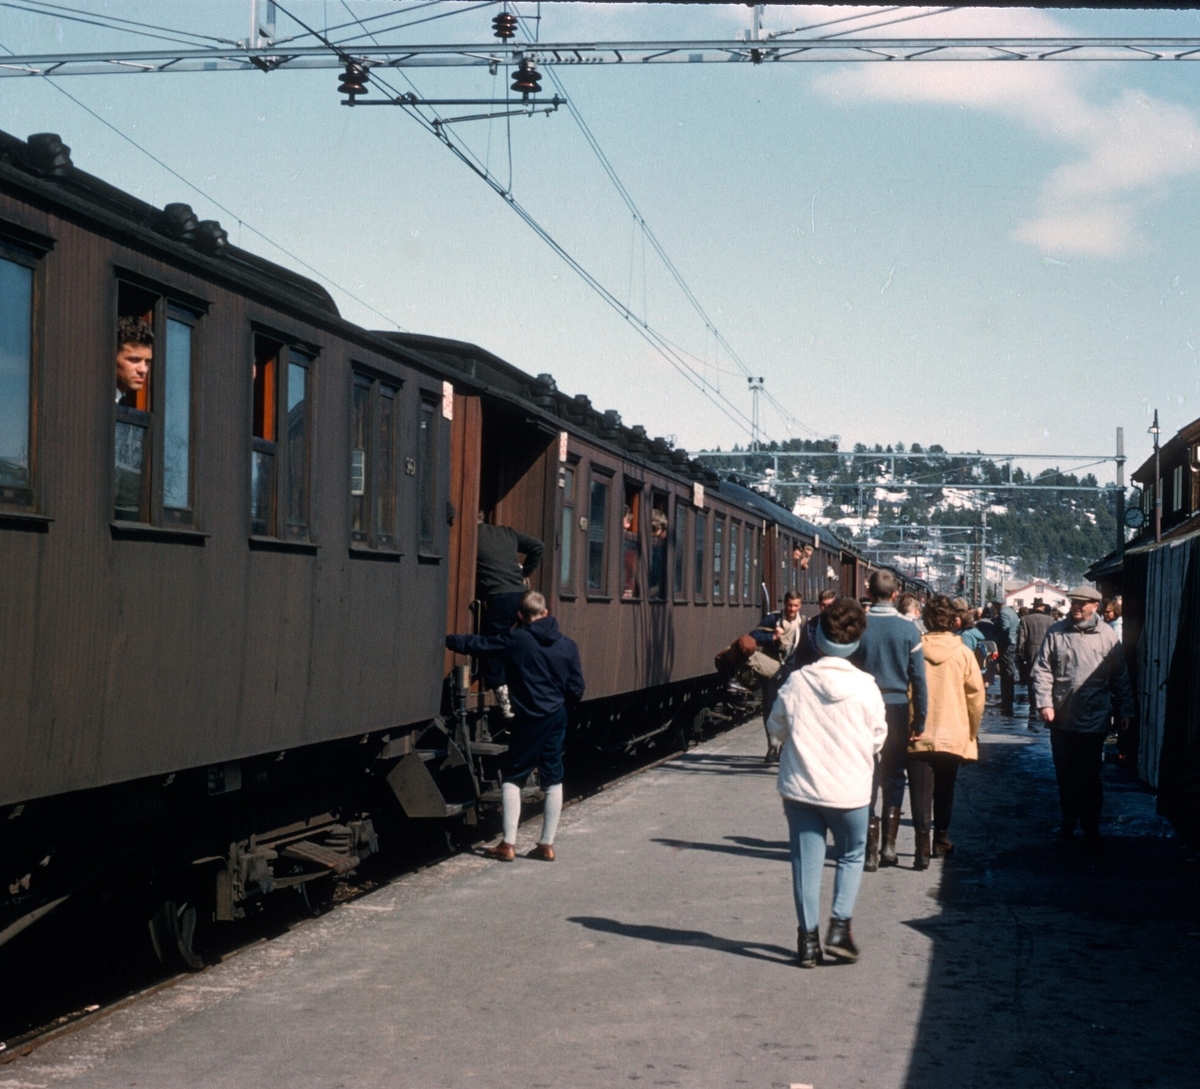 Ekstratog til Bergen tredje påskedag. Strekninga Ål-Ustaoset vart opna for elektrisk drift i desember 1963.
Bildet er tatt av Thorbjørn Pedersen.